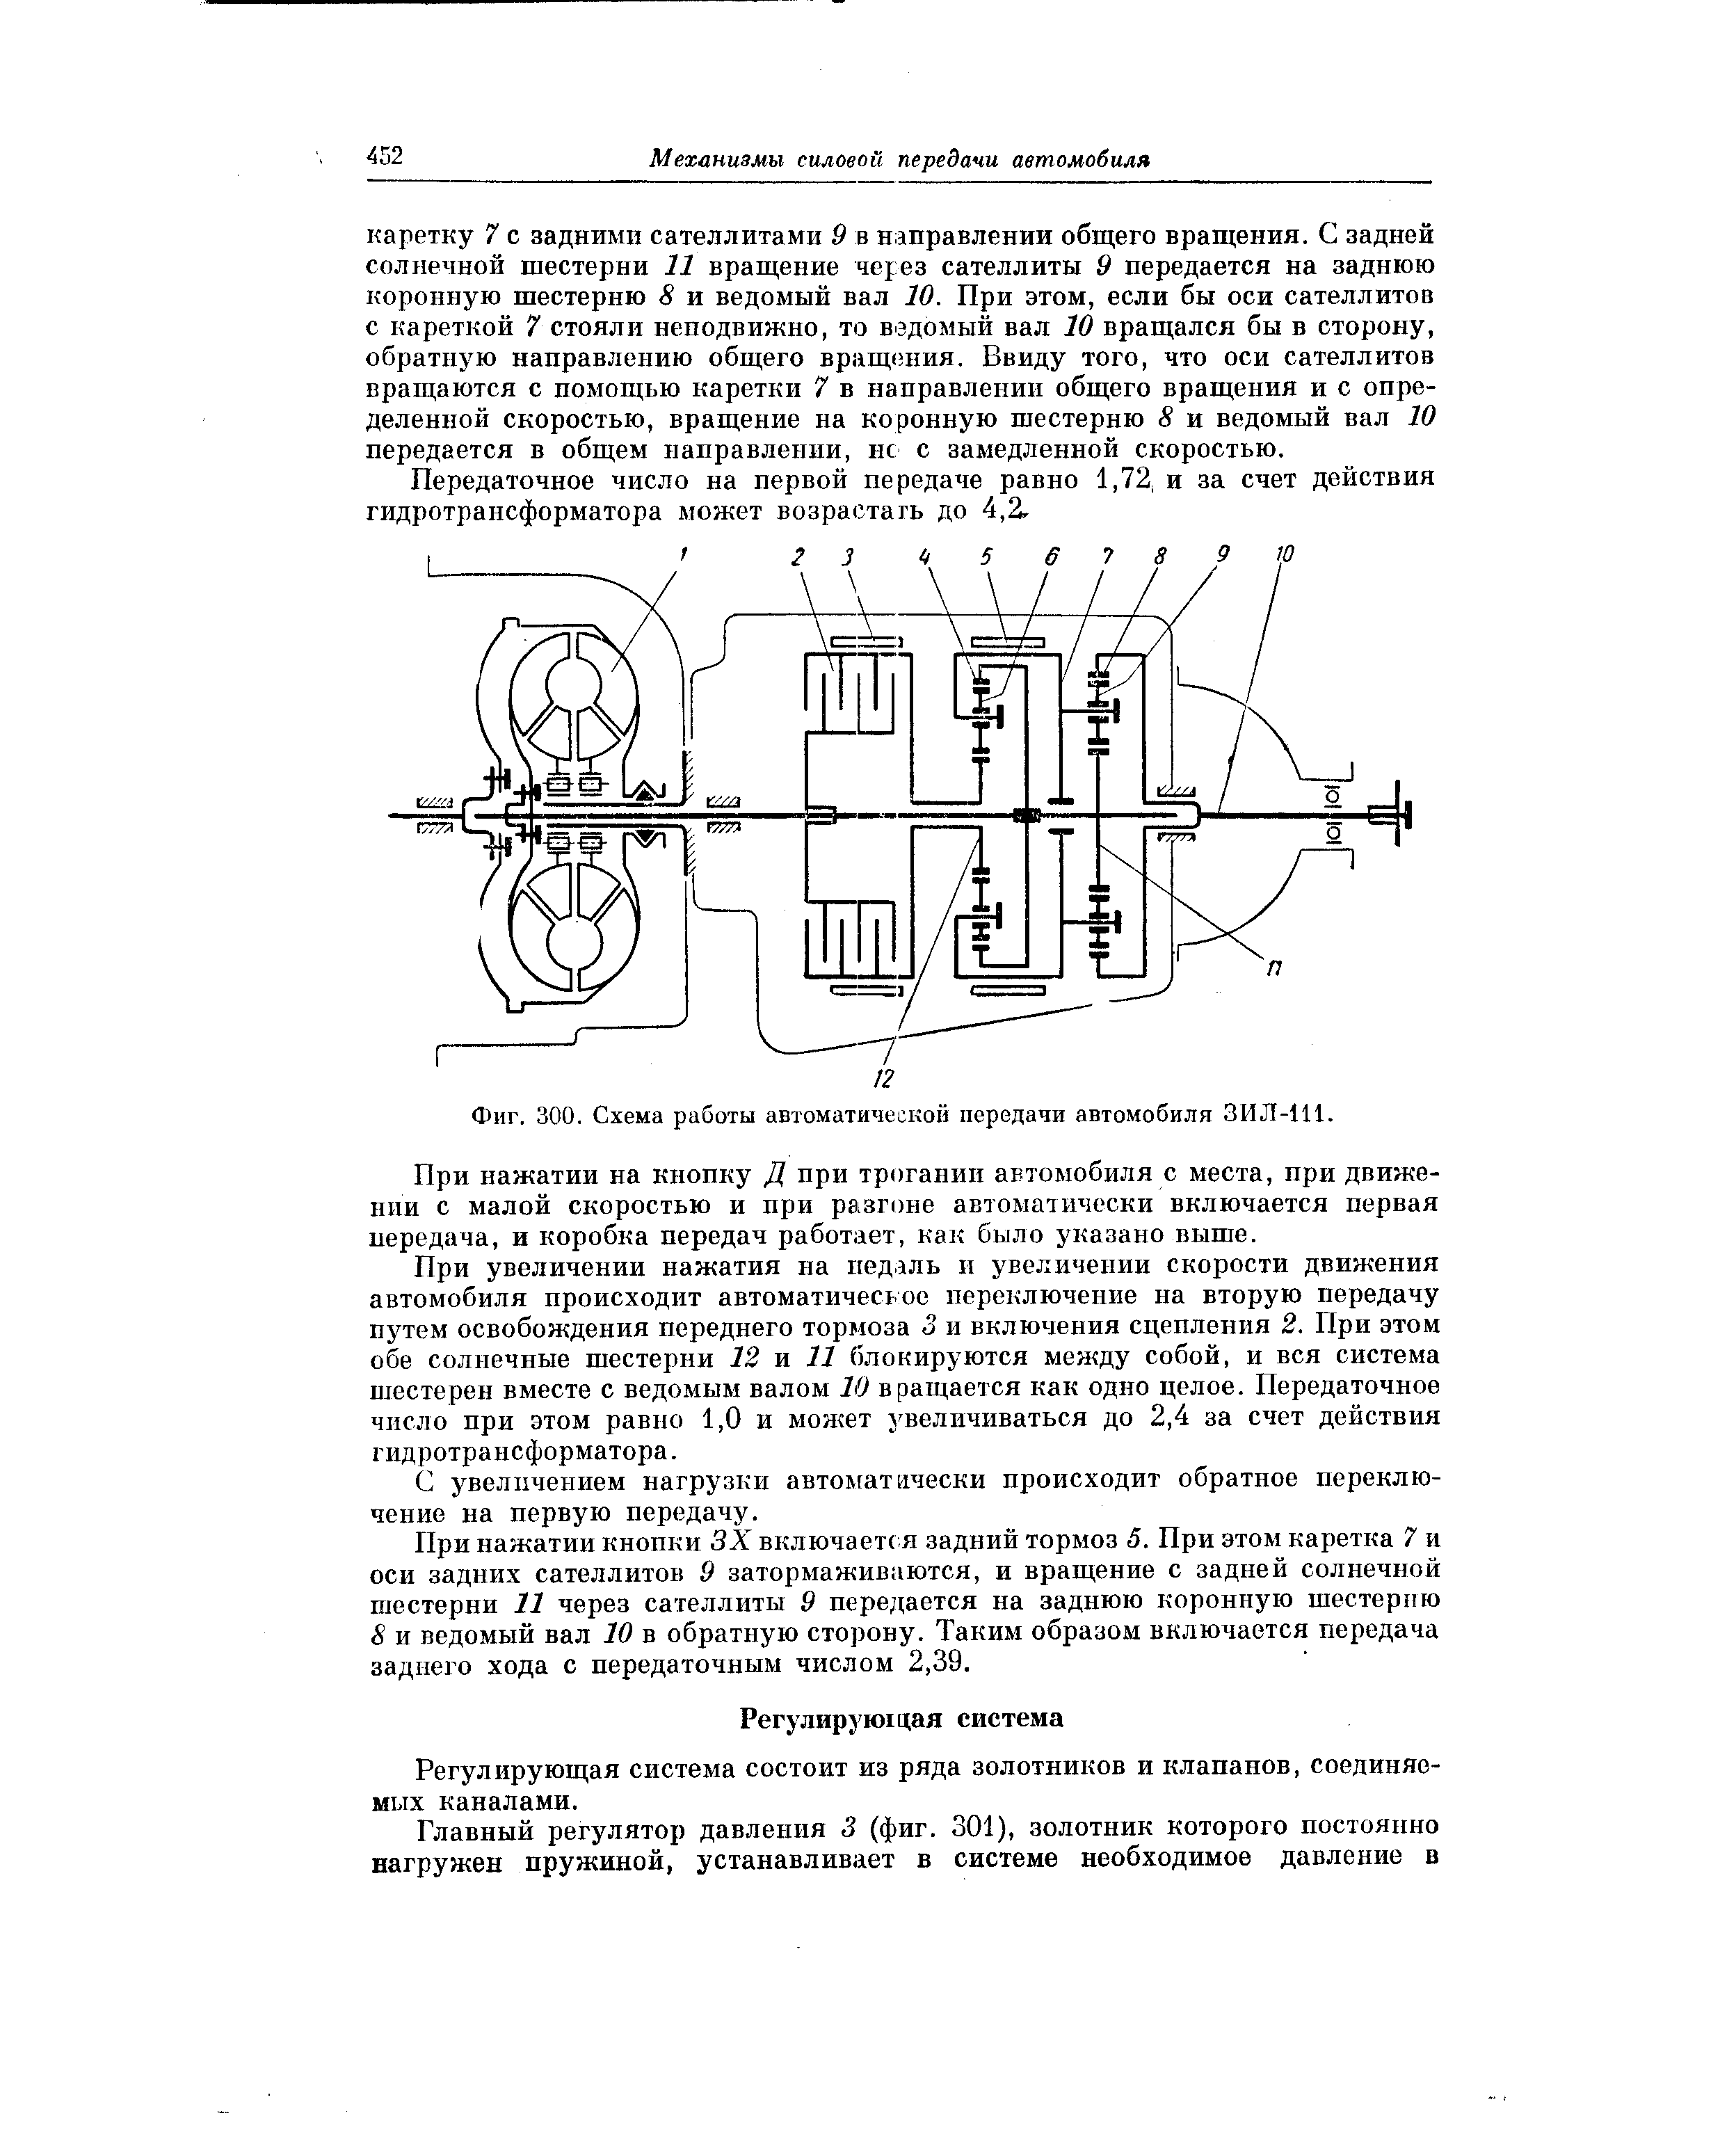 Фиг. 300. Схема работы автоматической передачи автомобиля ЗИЛ-111.
